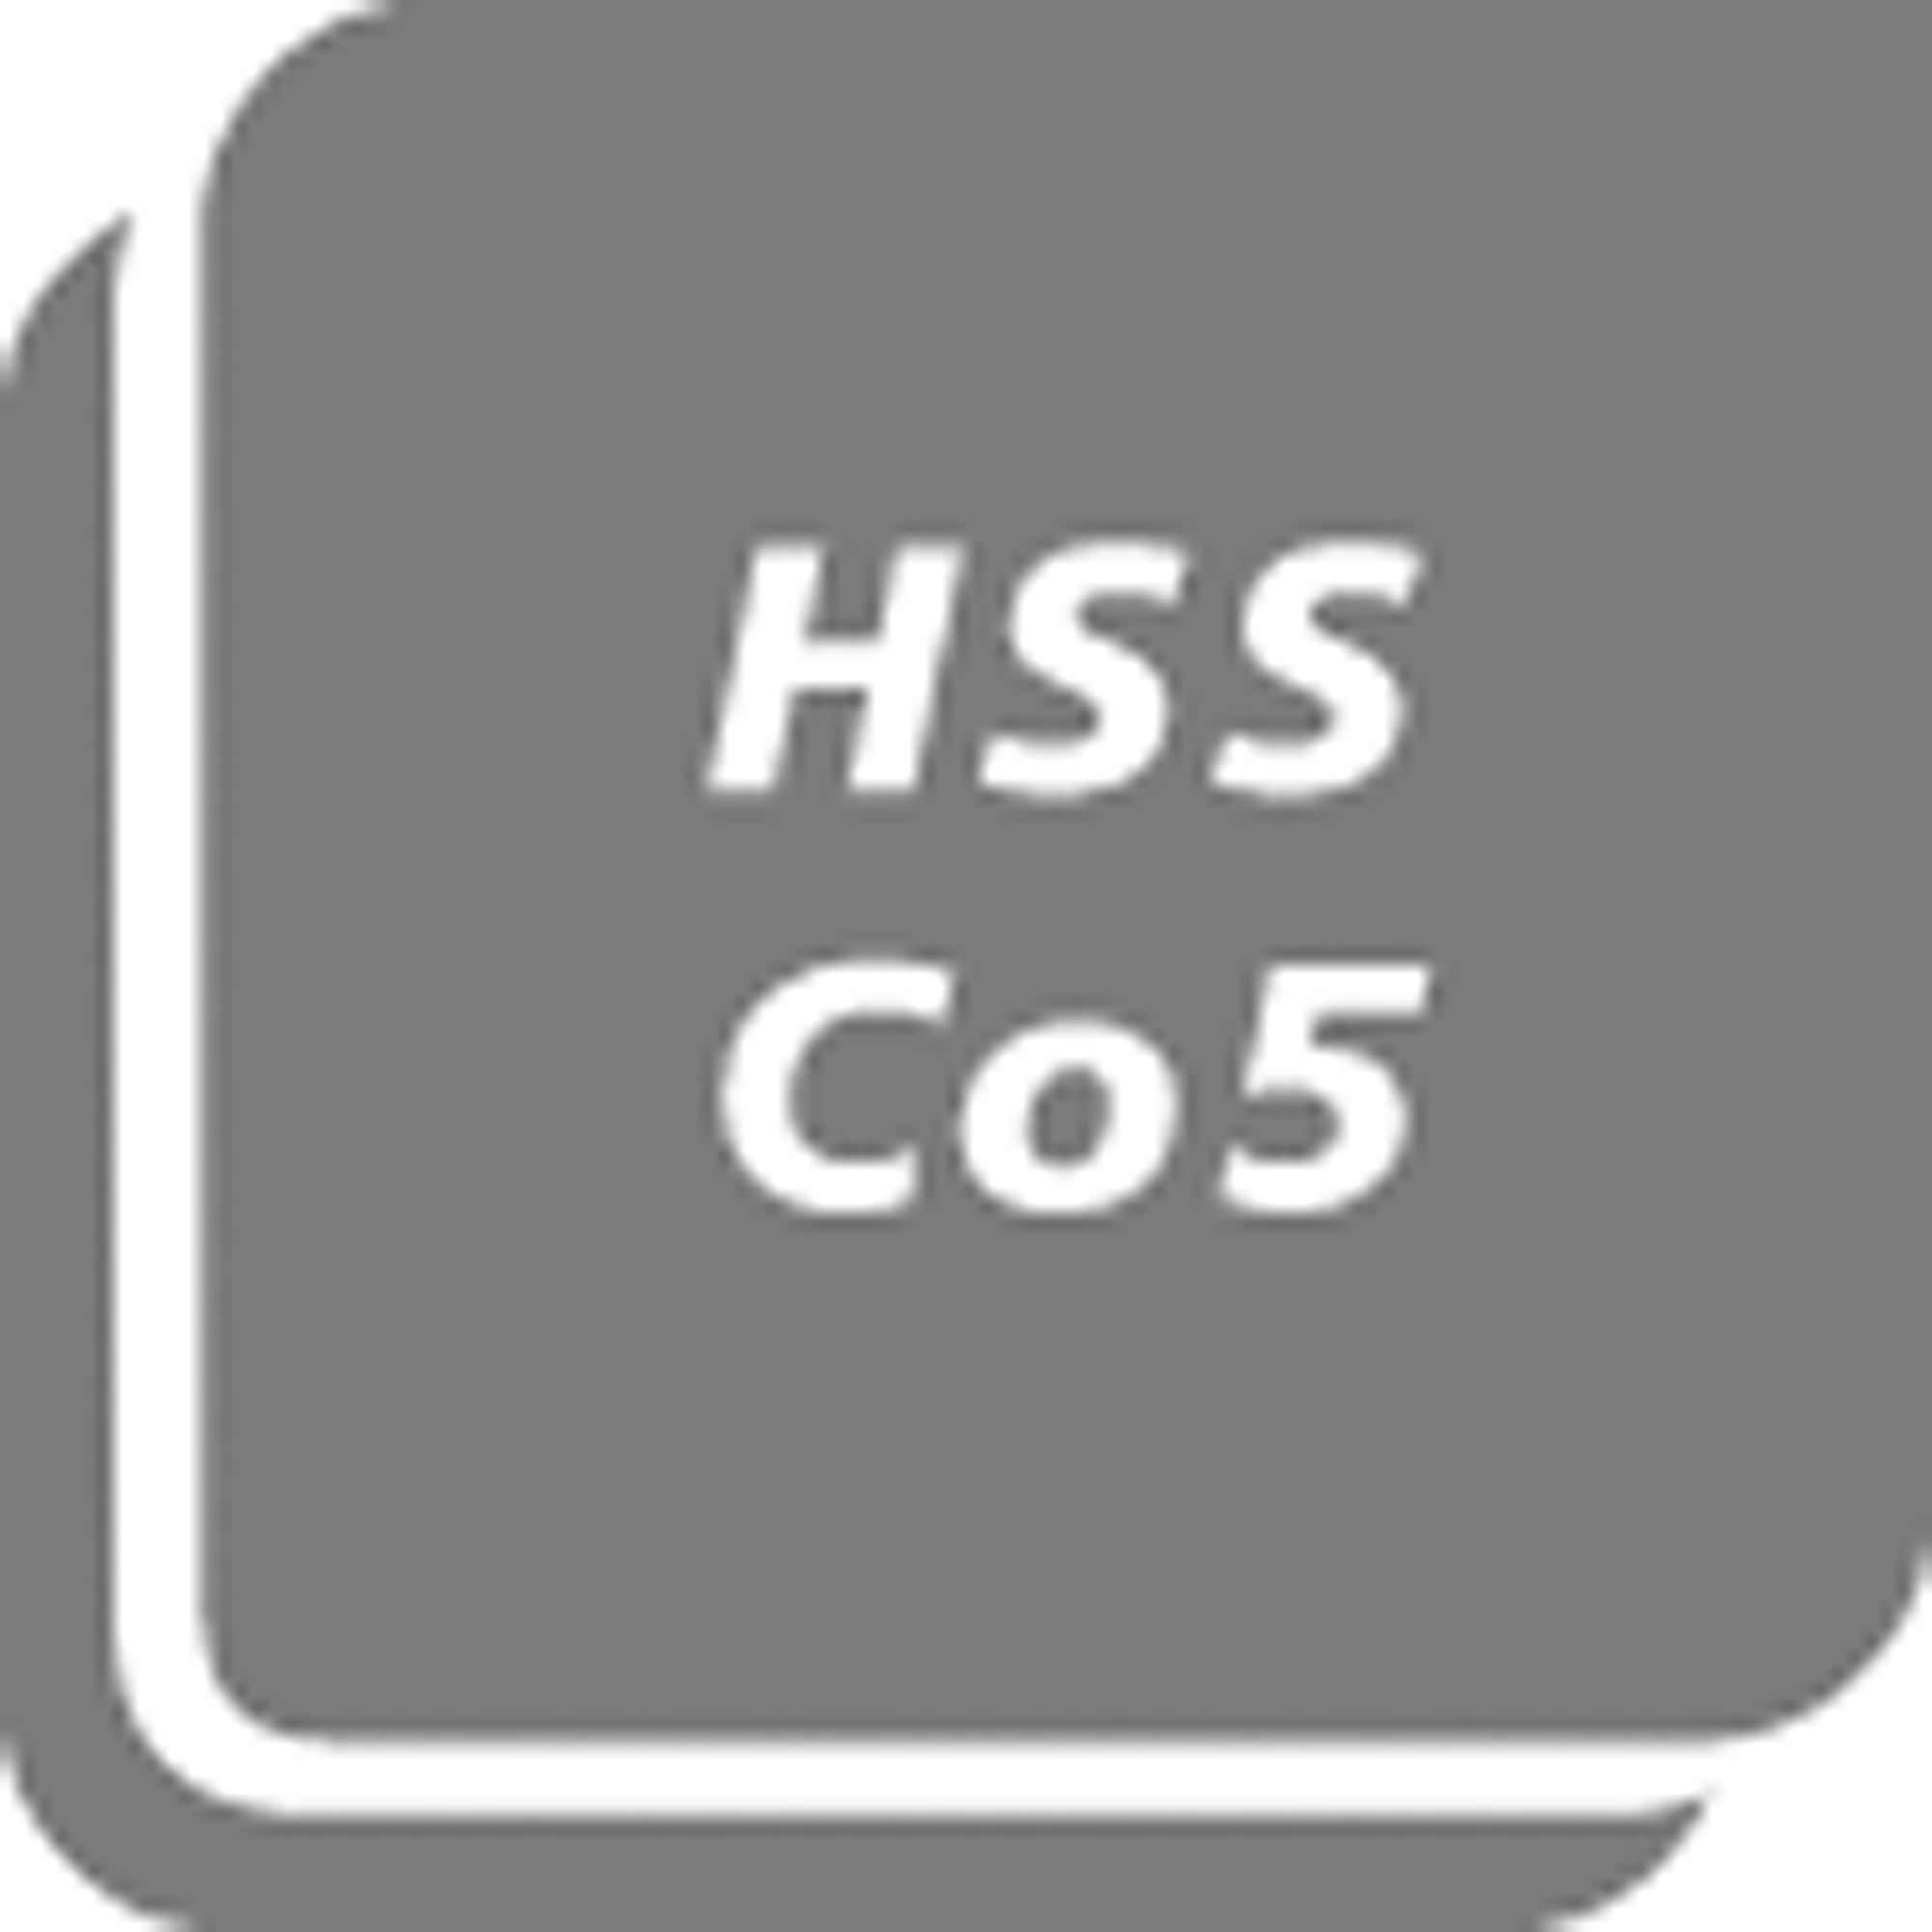 HSS 5,5 130G Co5 mm Spiralbohrer ähnlich Holzbohrer, D338N Exact